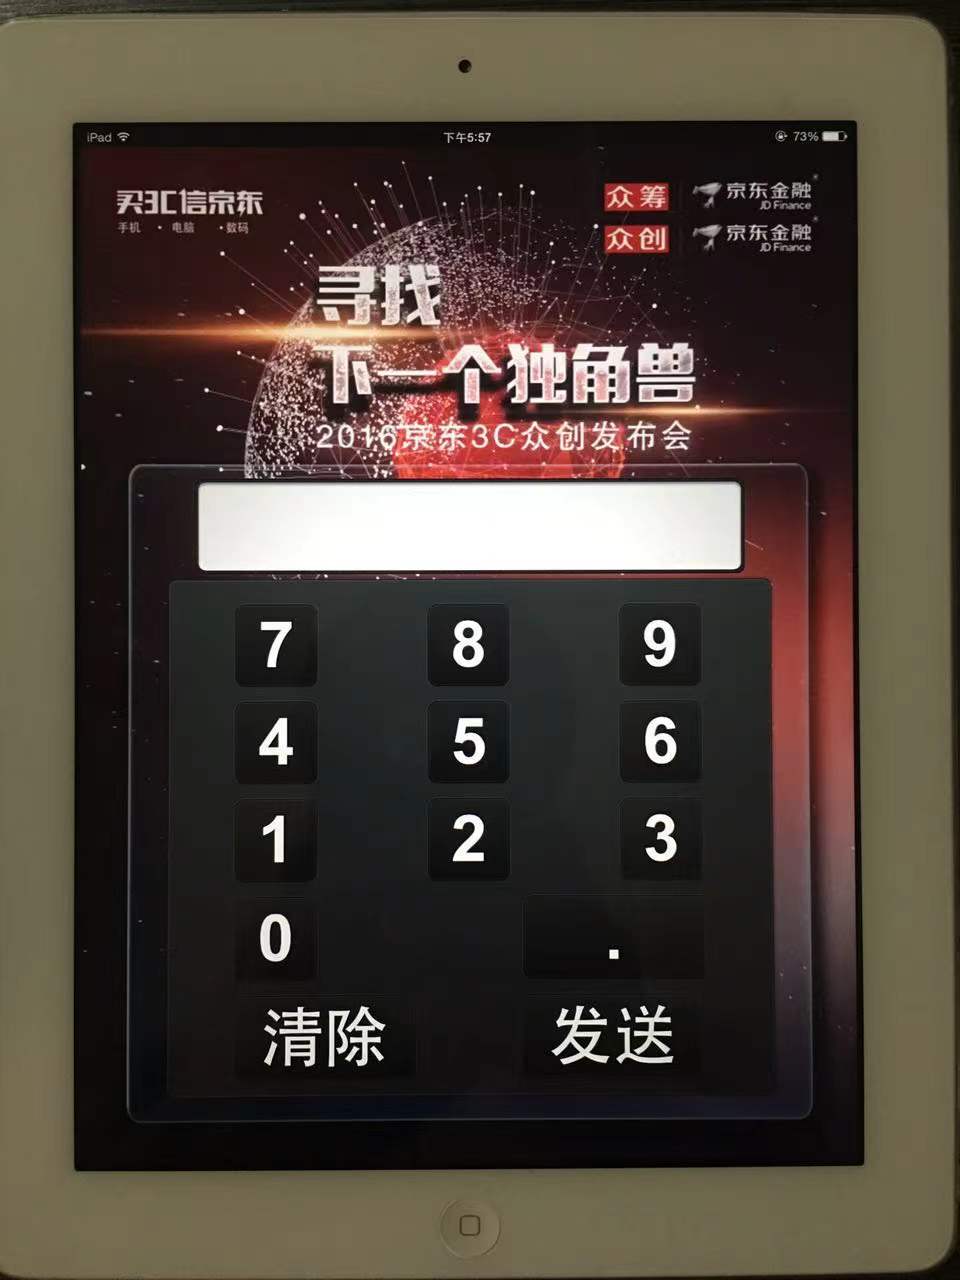 廊坊打分器公司 北京九鼎伟星科技有限公司